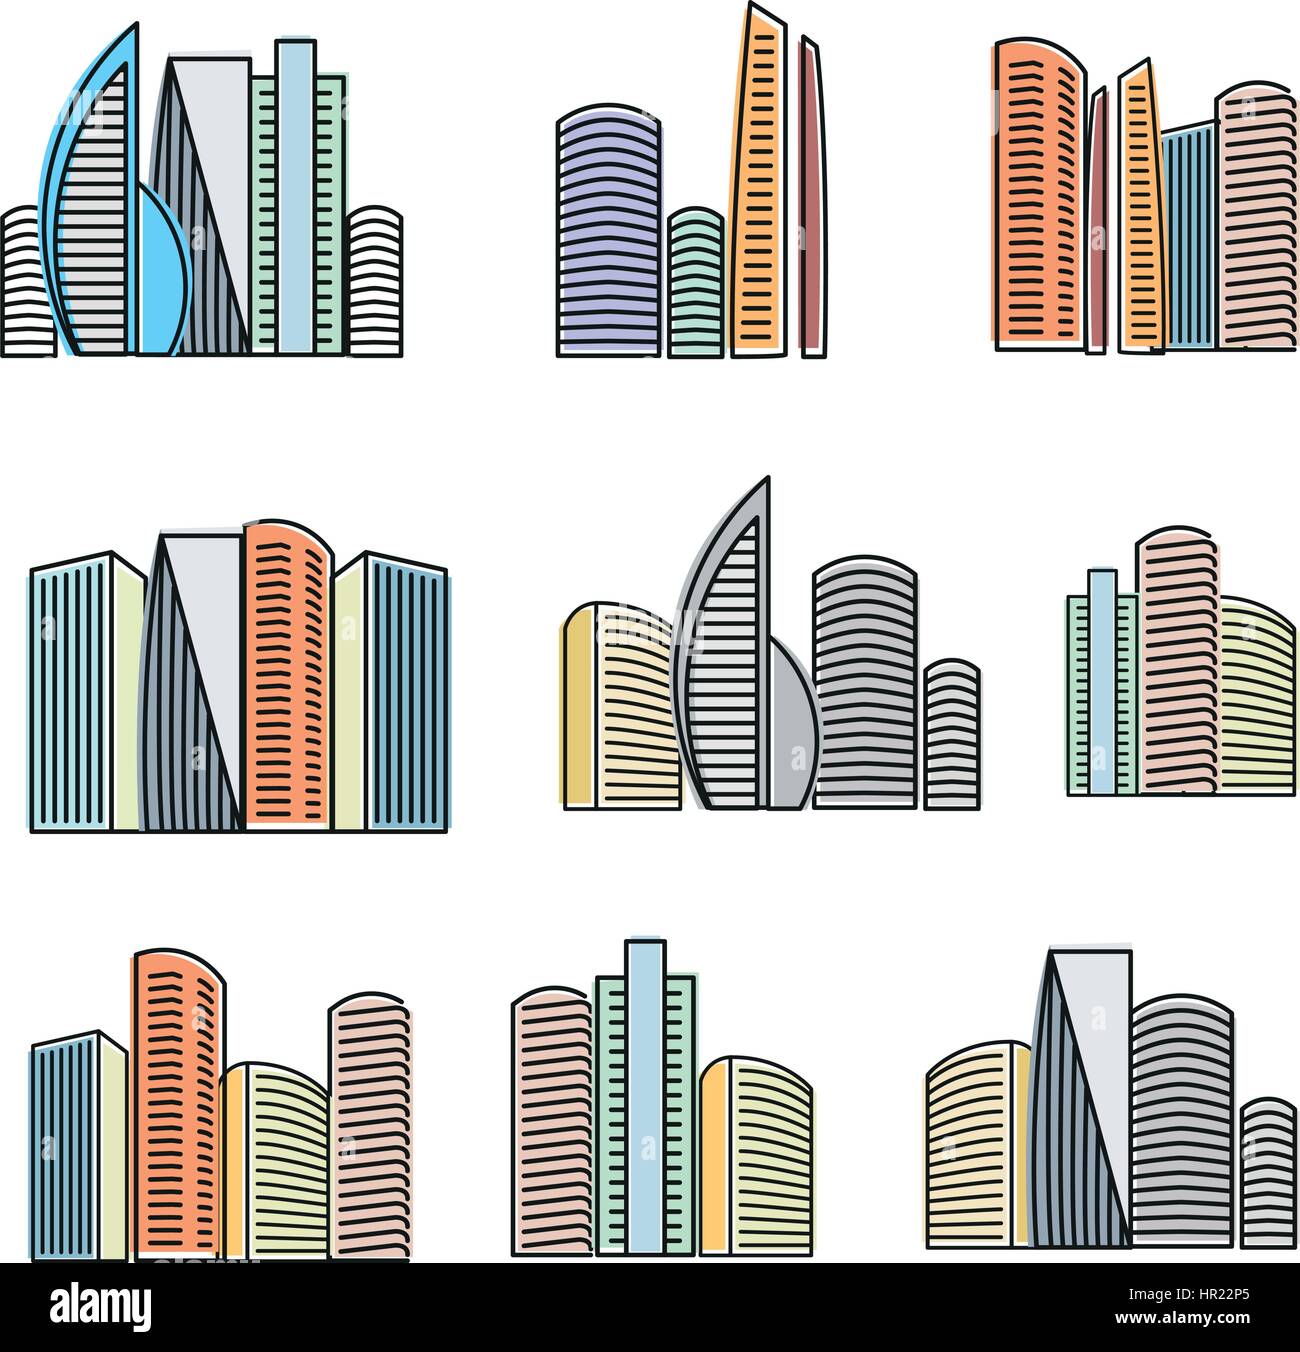 Isolato colorati edifici alti raccolta di icone, grattacieli illustrazioni vettoriali su sfondo bianco. Illustrazione Vettoriale